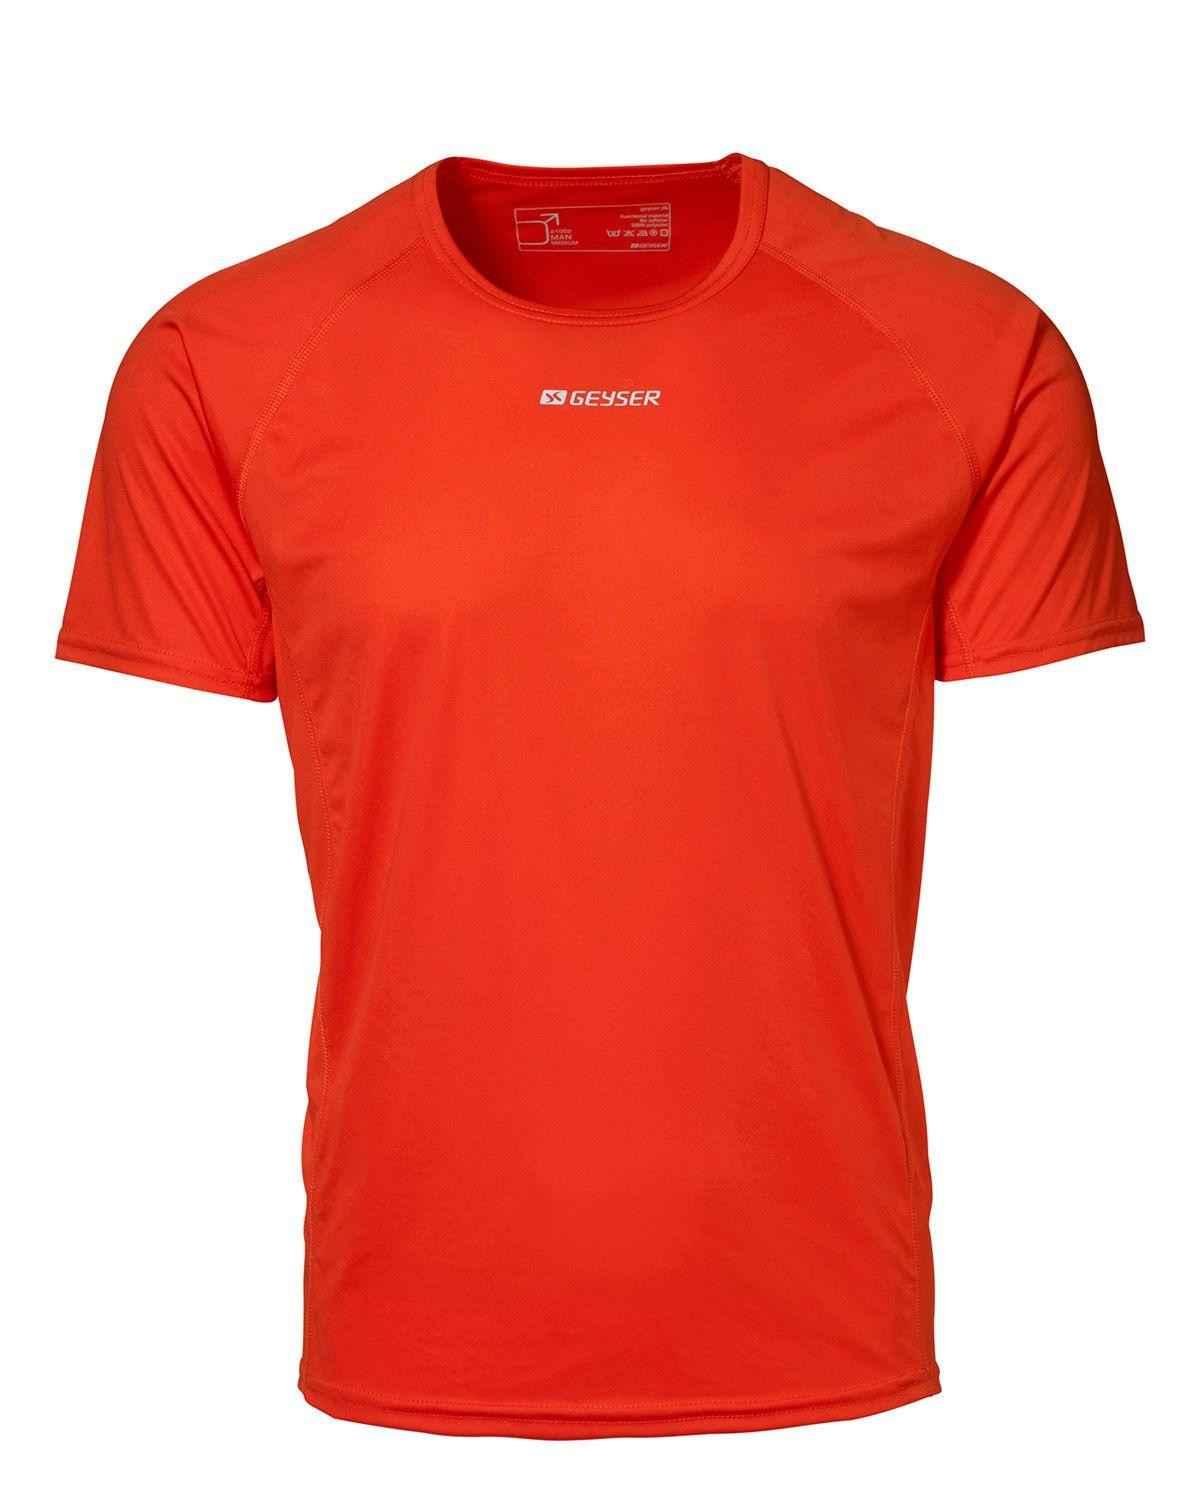 GEYSER Active T-shirt til Herre (Orange, 2XL)